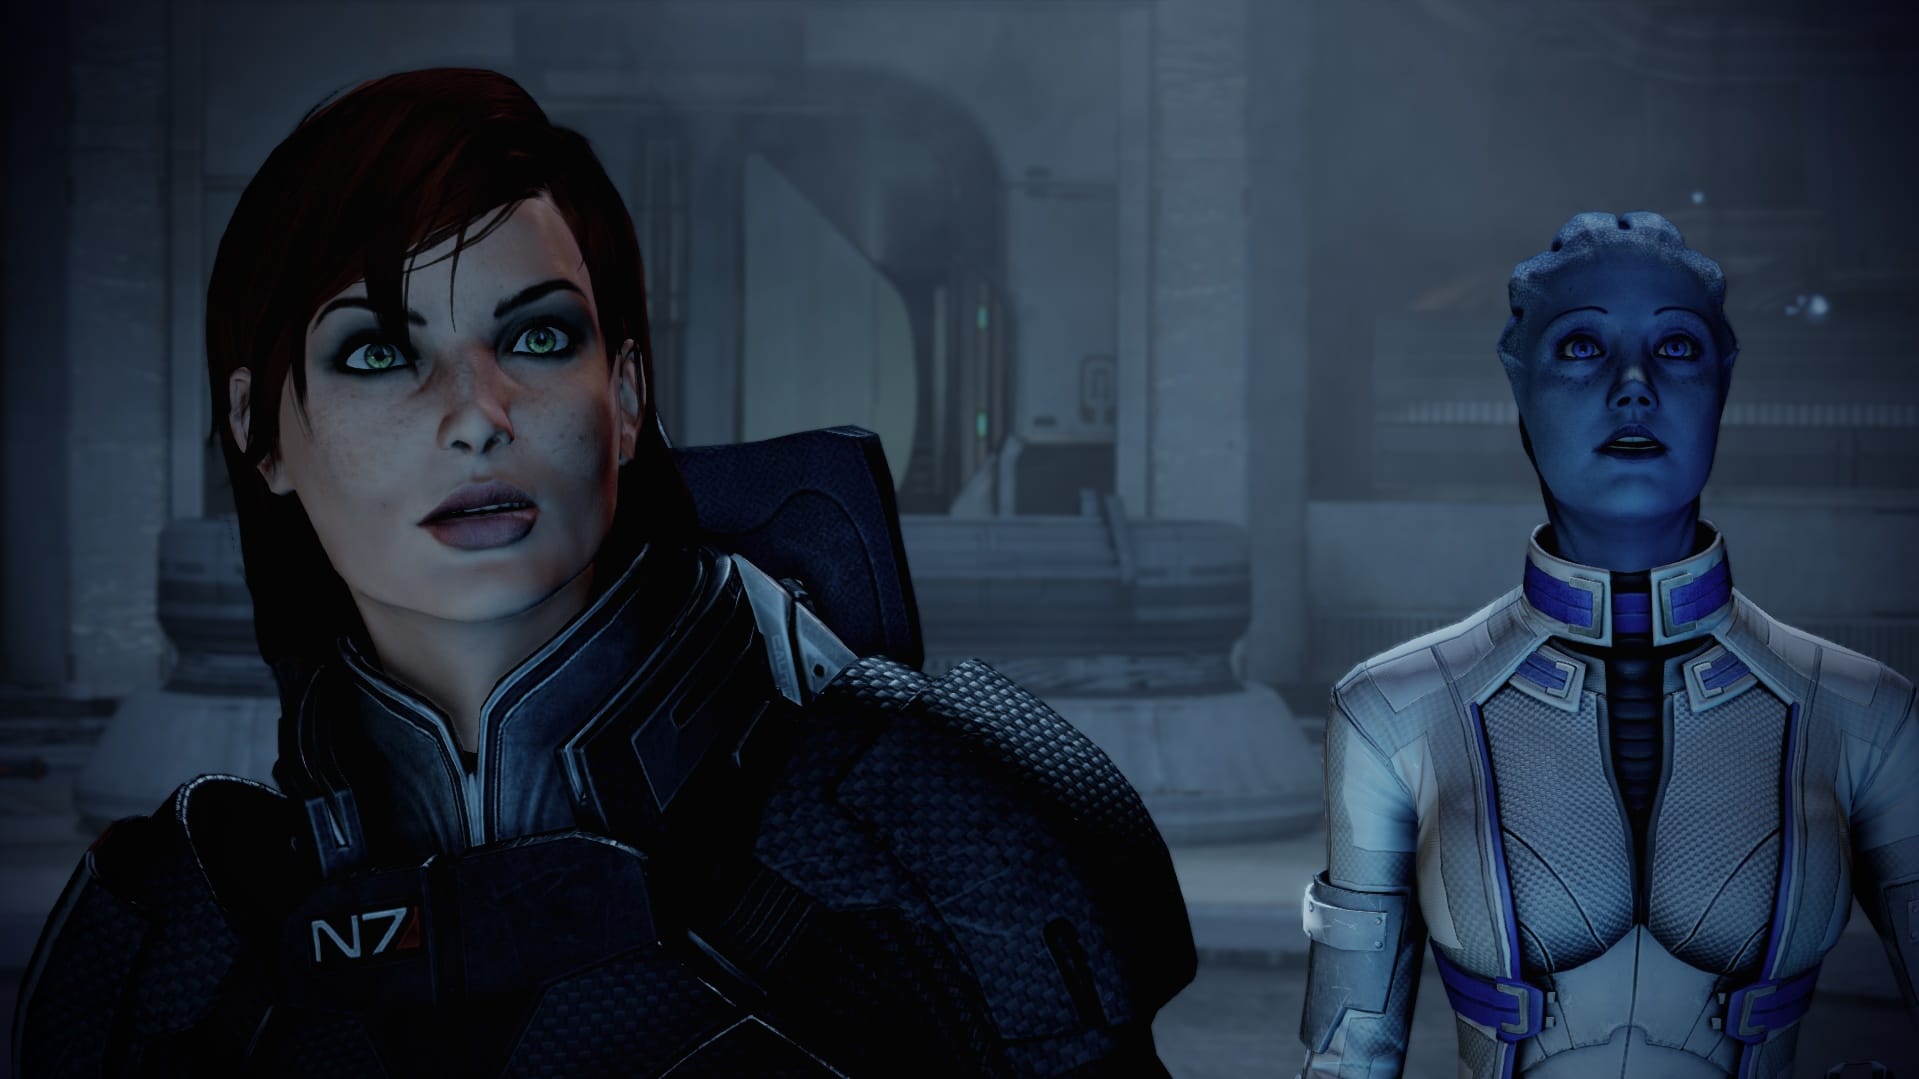 Espressioni facciali che parlano chiaro. Mass Effect 2 è sempre buono per una sorpresa.